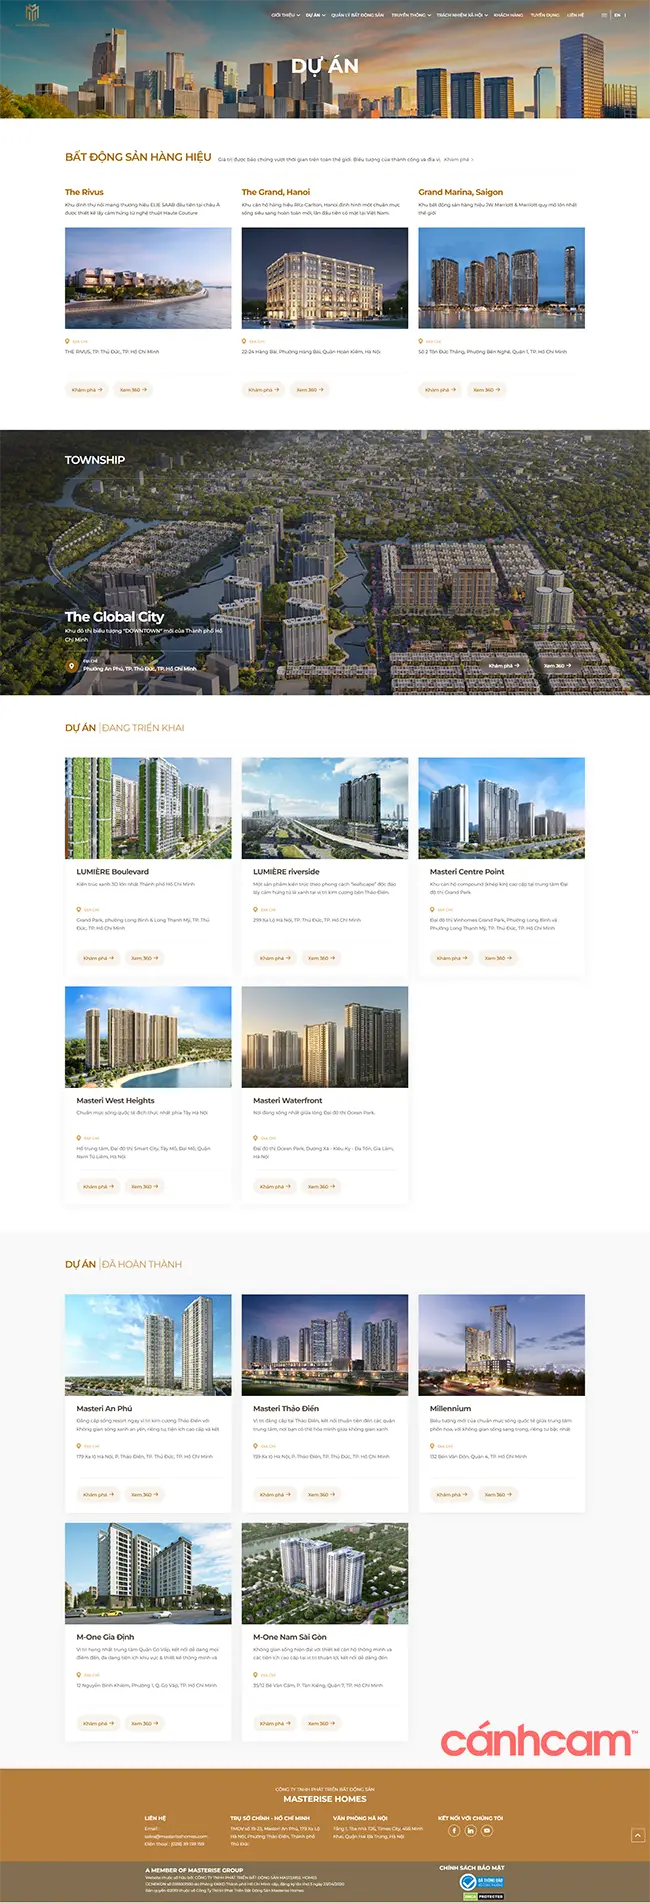 thiết kế trang web kiến trúc architecture, tạo trang web xây nhà kiến trúc, làm website kiến trúc xây dựng